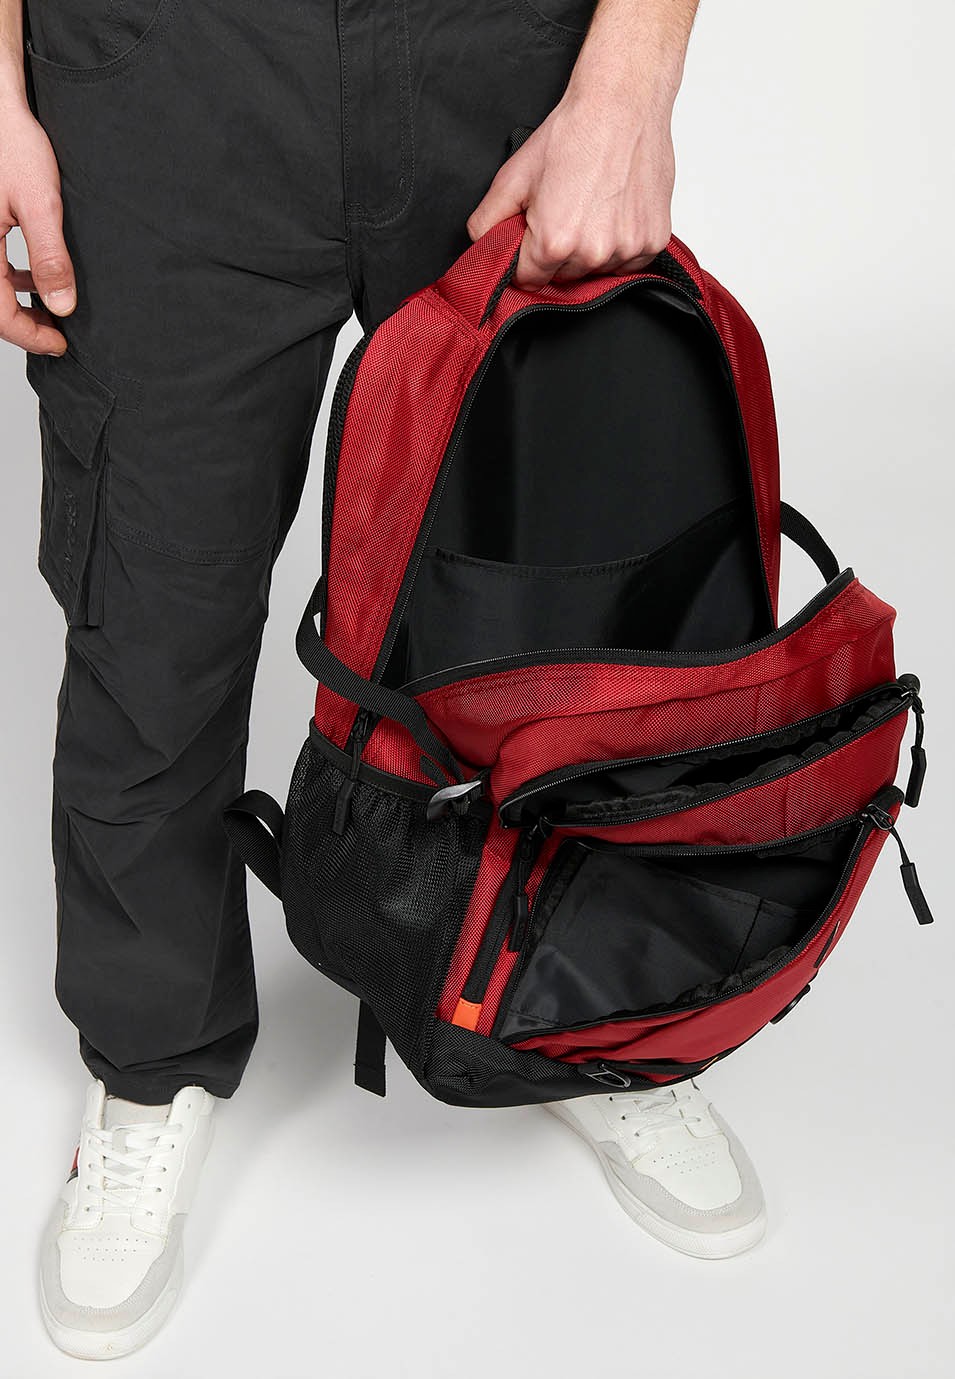 Koröshi-Rucksack mit drei Reißverschlussfächern, eines für Laptop, mit roten Innentaschen 8